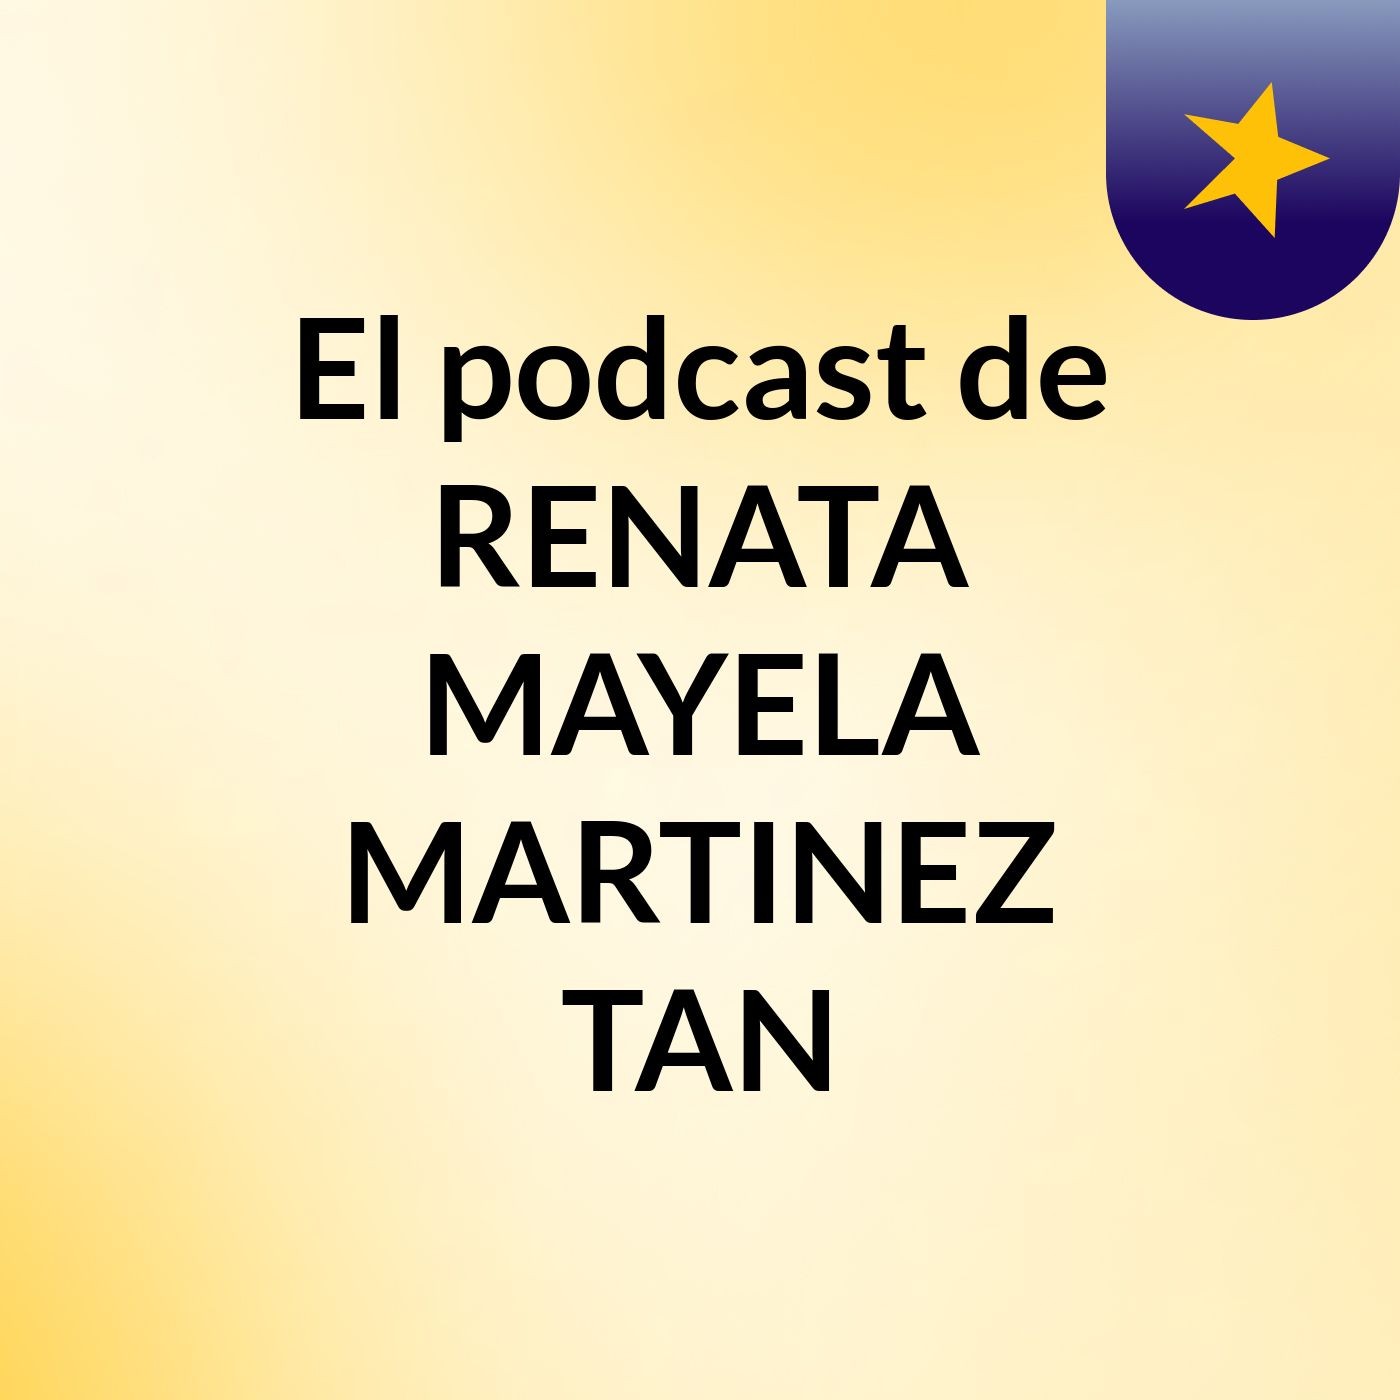 El podcast de RENATA MAYELA MARTINEZ TAN